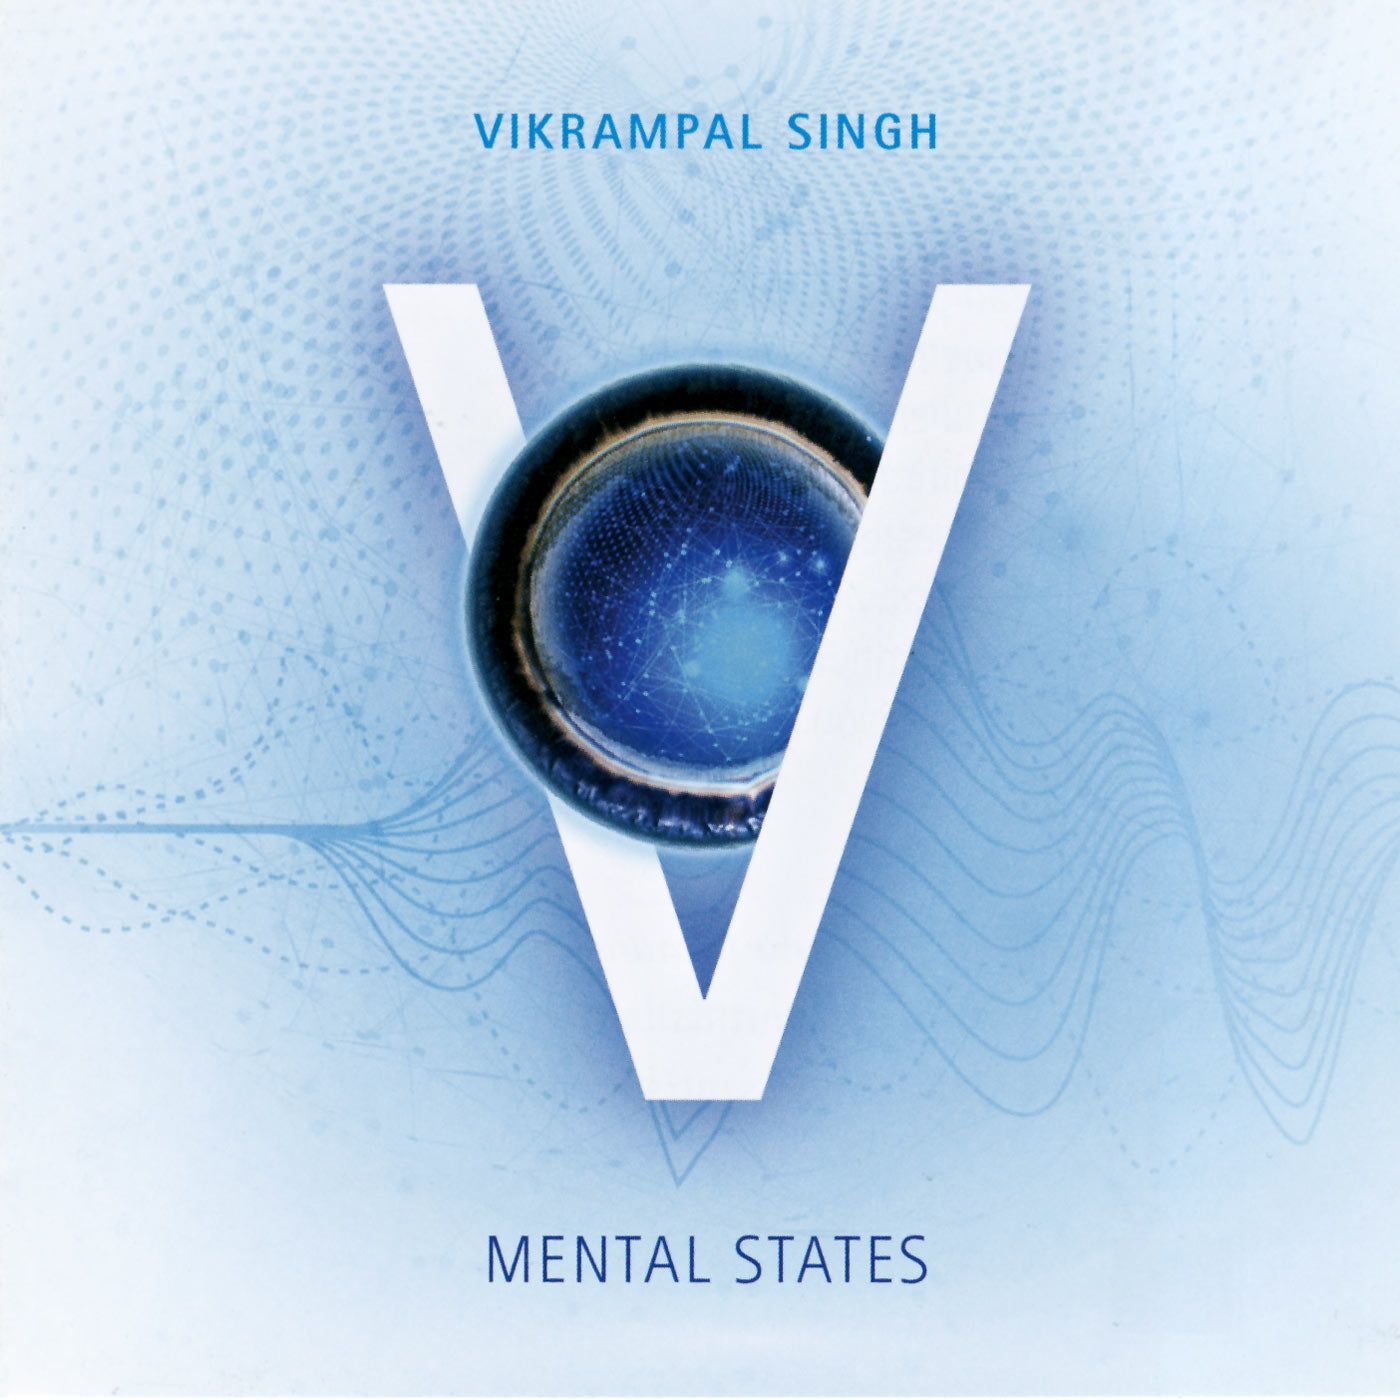 États mentaux - Vikrampal Singh complet